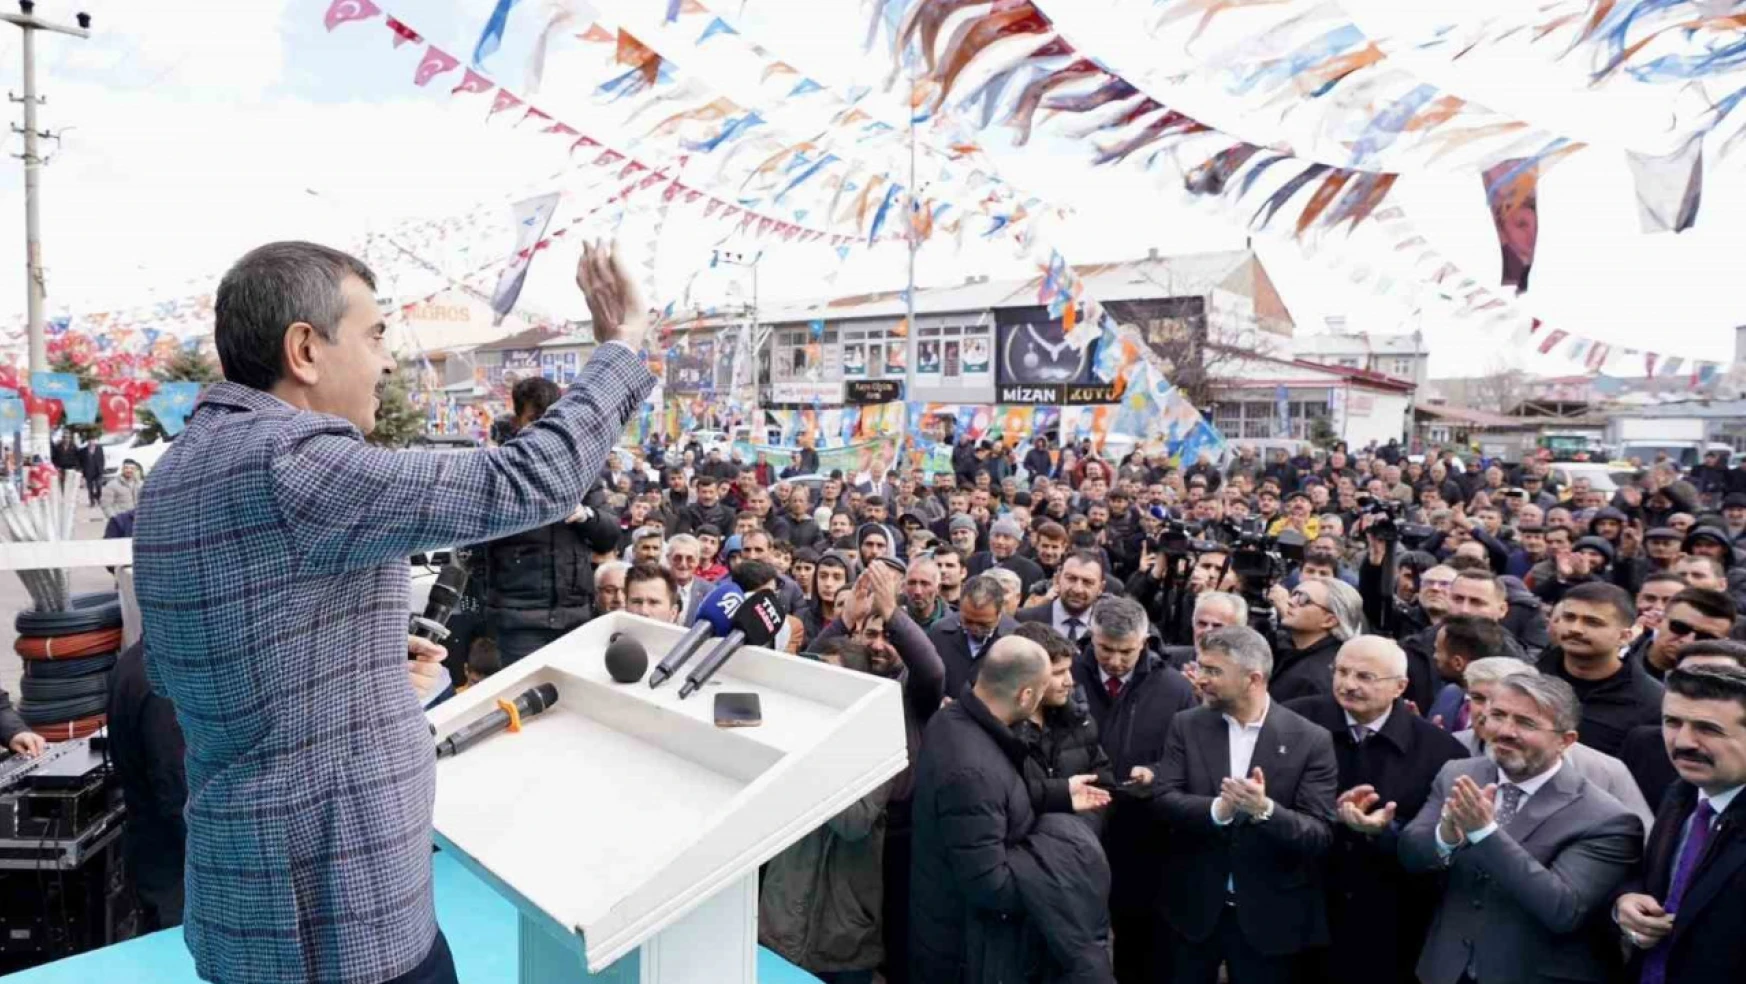 Milli Eğitim Bakanı Tekin Erzurum'da